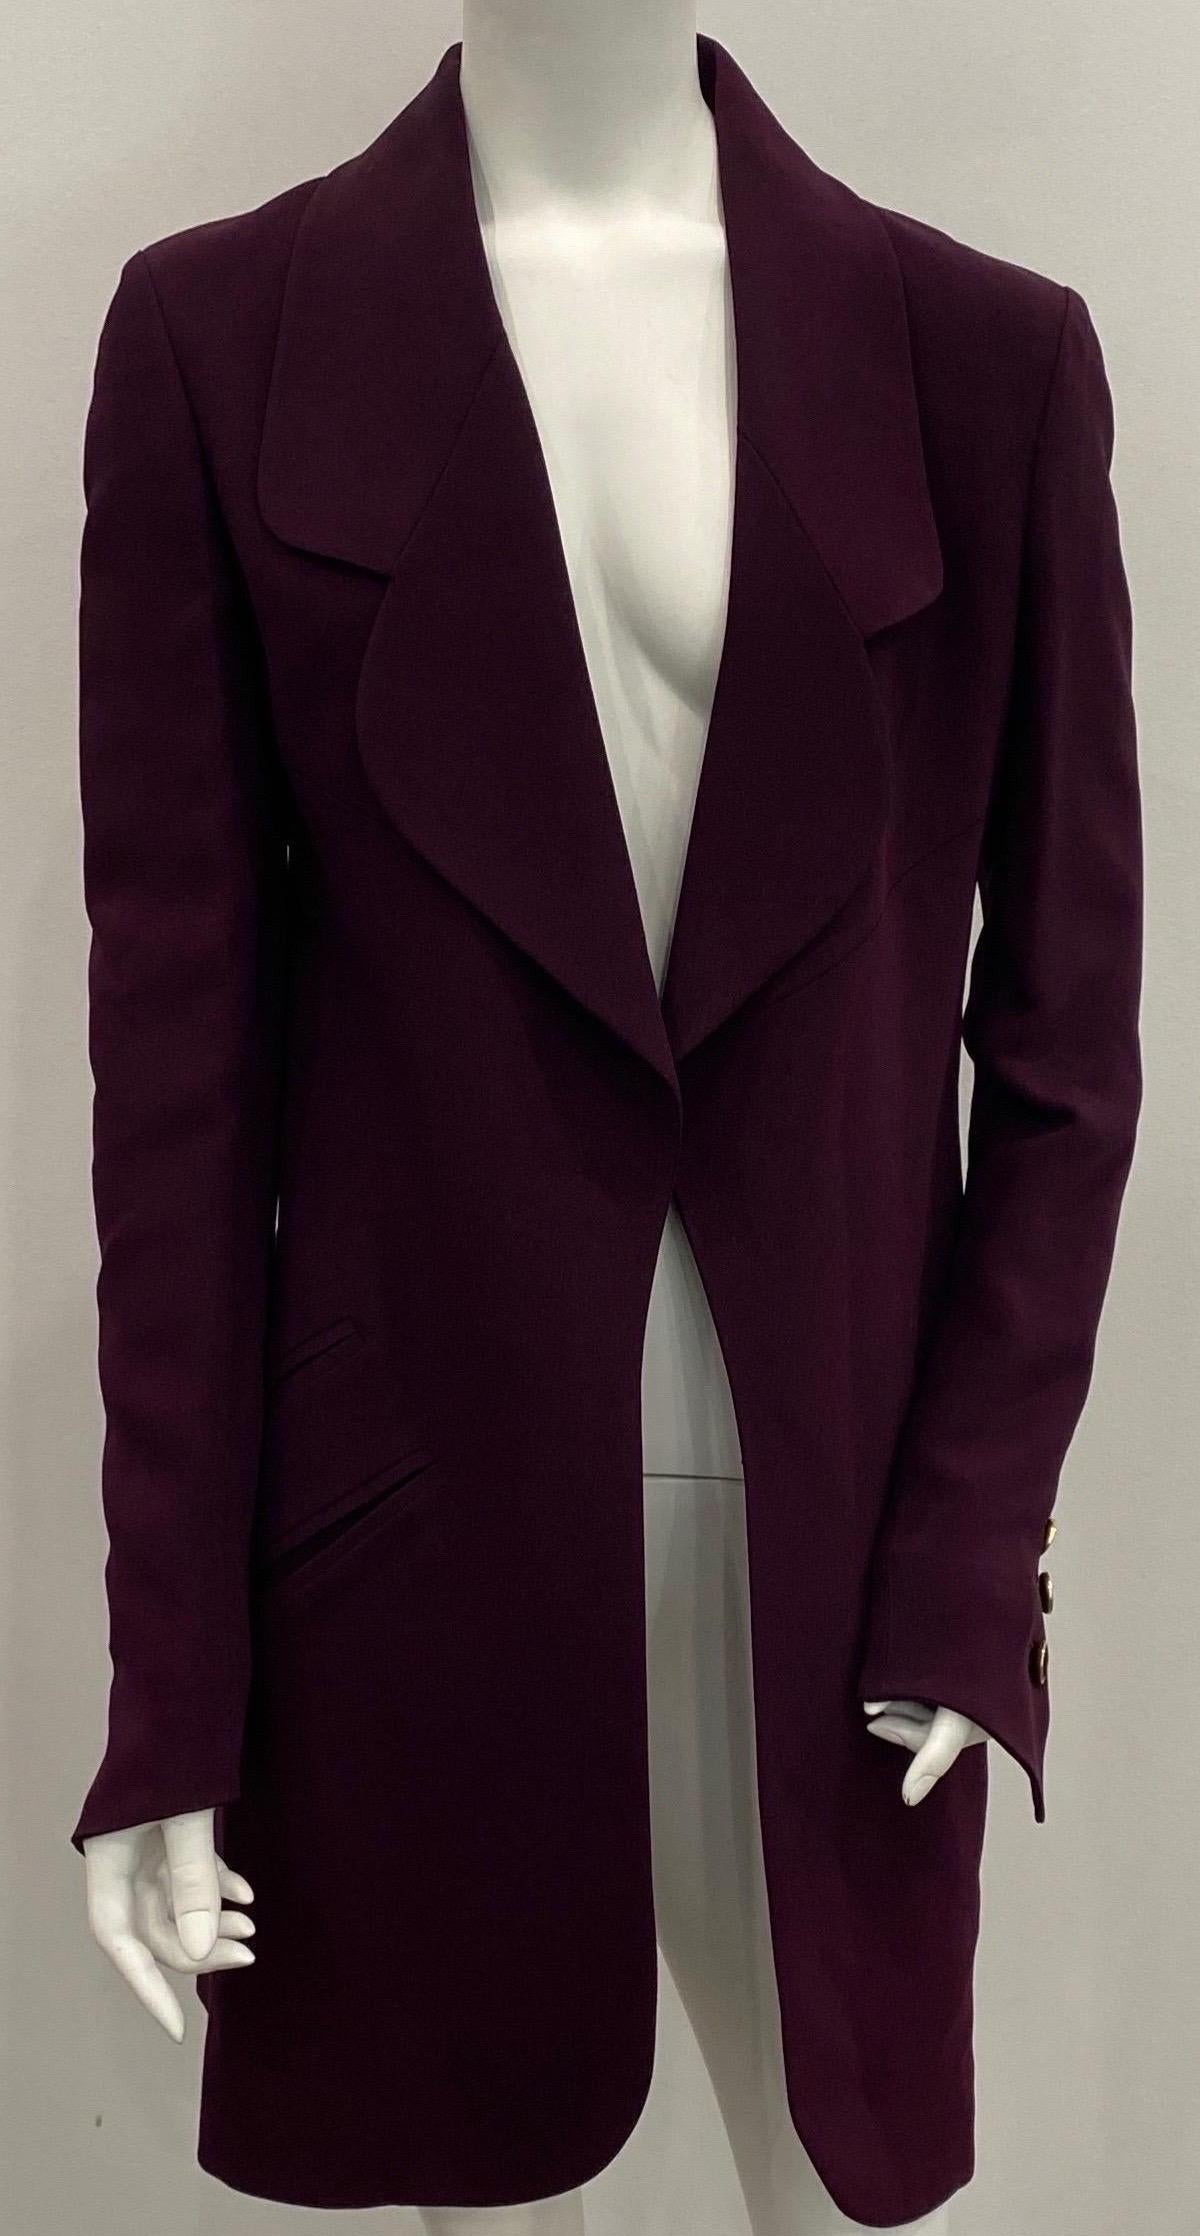 Karl Lagerfeld Aubergine 3/4 Mantel - Größe 36 Diese lange Jacke/Dreiviertelmantel ist eine schöne Aubergine Farbe. Die Jacke hat ein großes Revers, 2 funktionelle Taschen mit Schlitz auf jeder Seite, einen Schlitz auf der Rückseite und 3